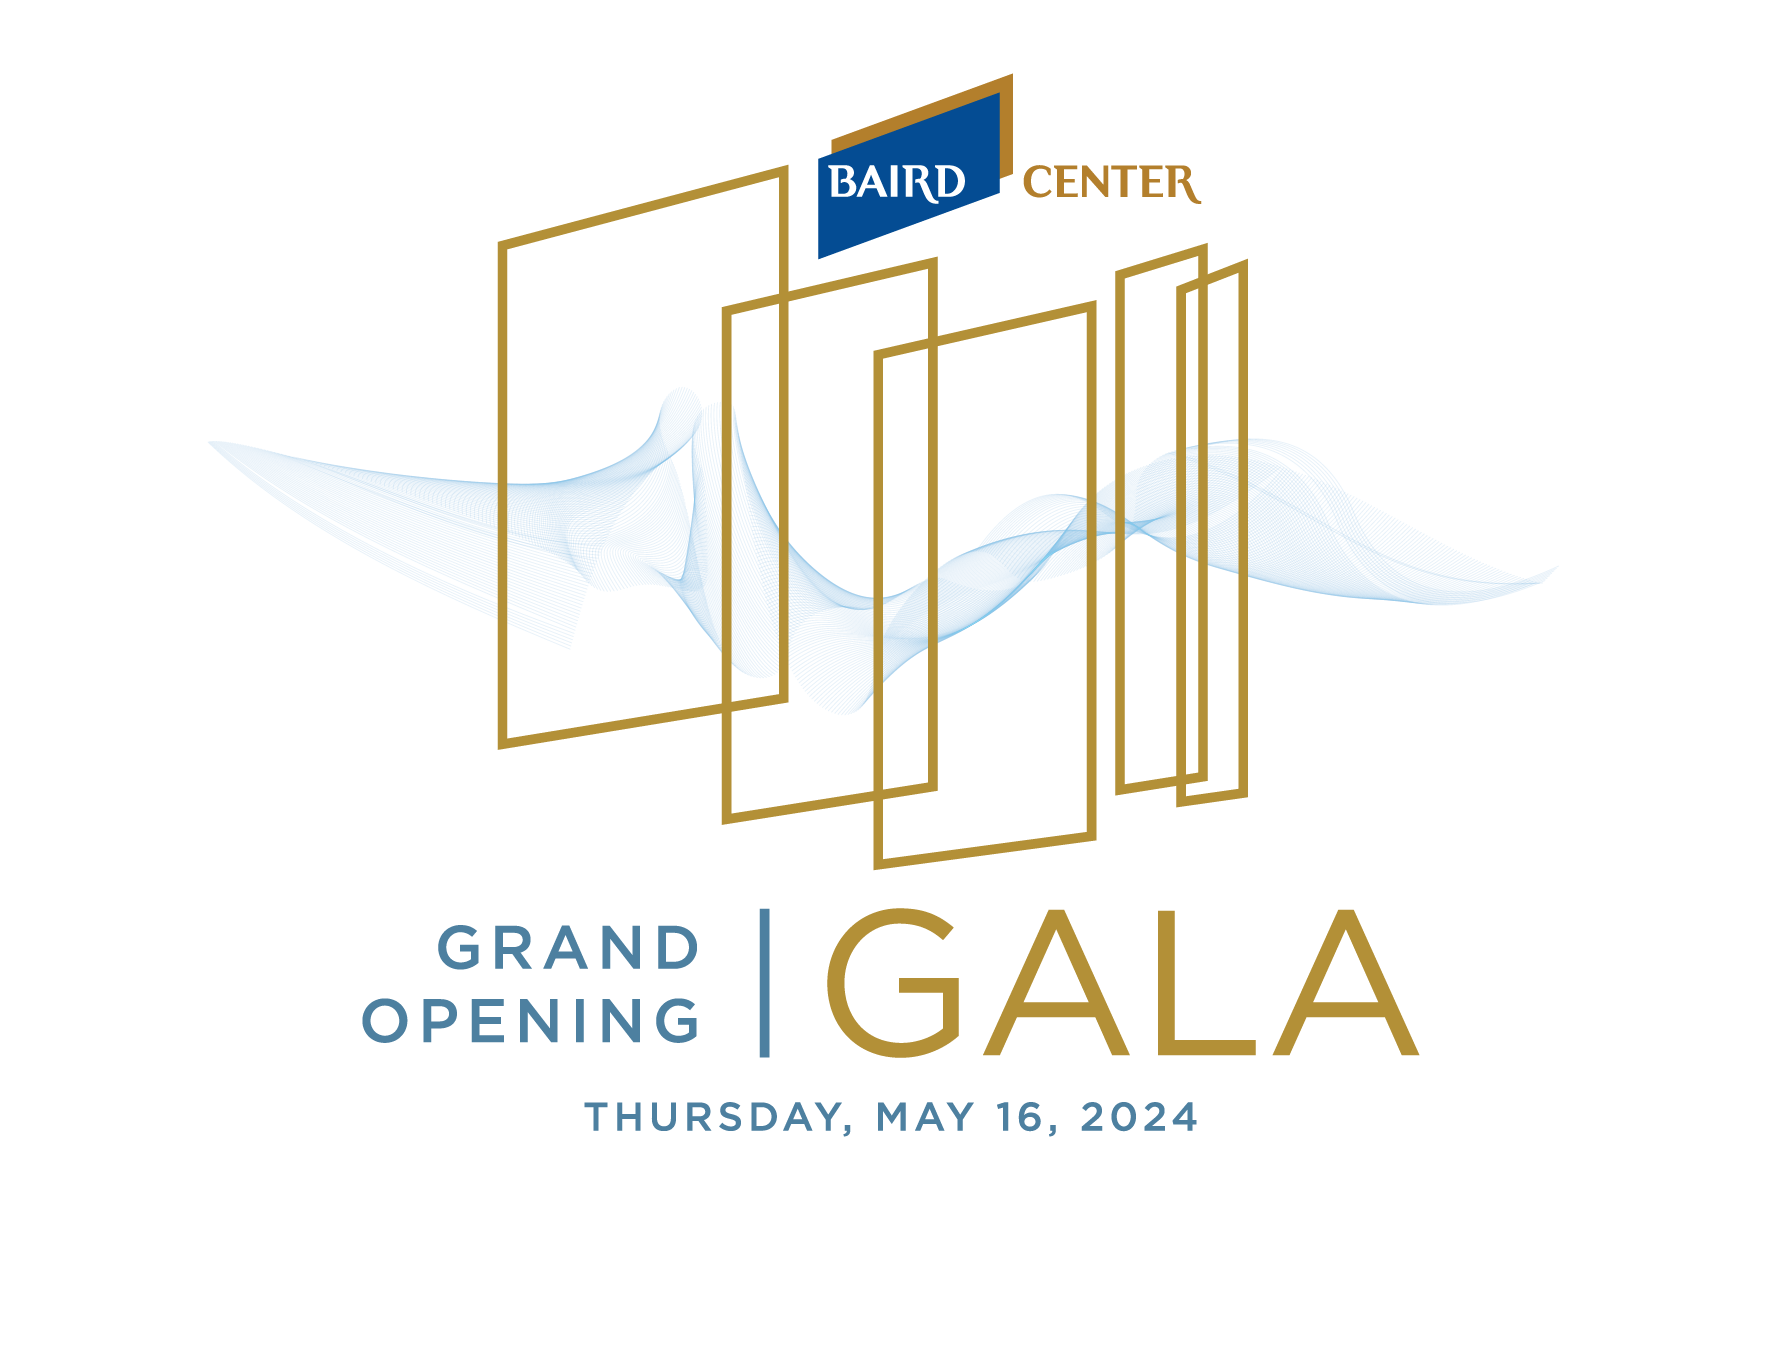 Baird Center gala logo